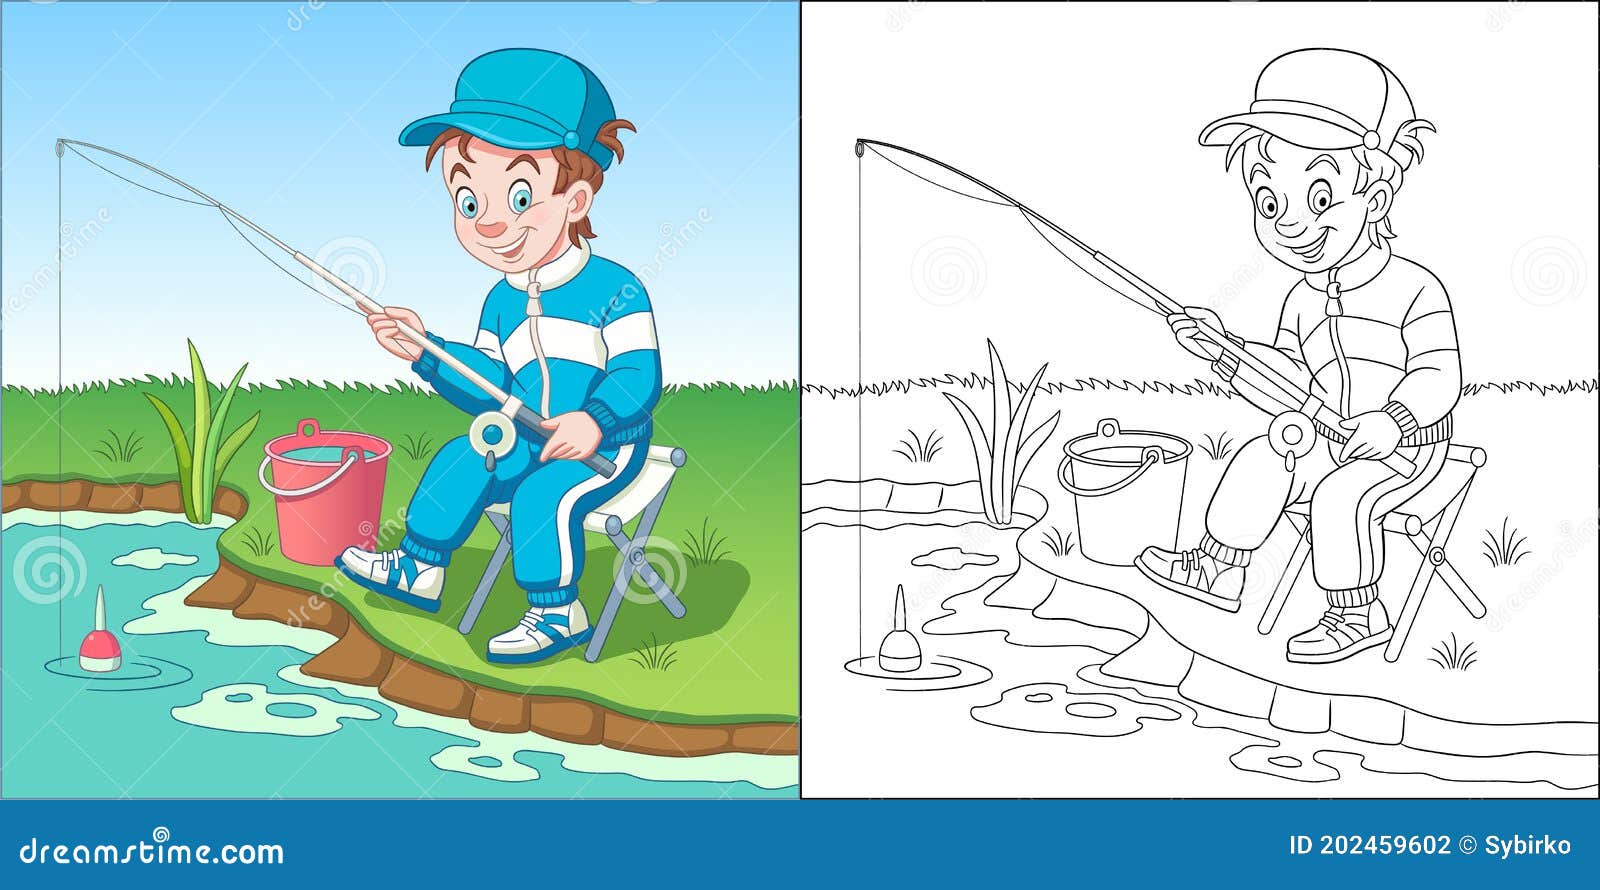 201 Kids Fishing Clip Art Stock Illustrations, Vectors & Clipart -  Dreamstime